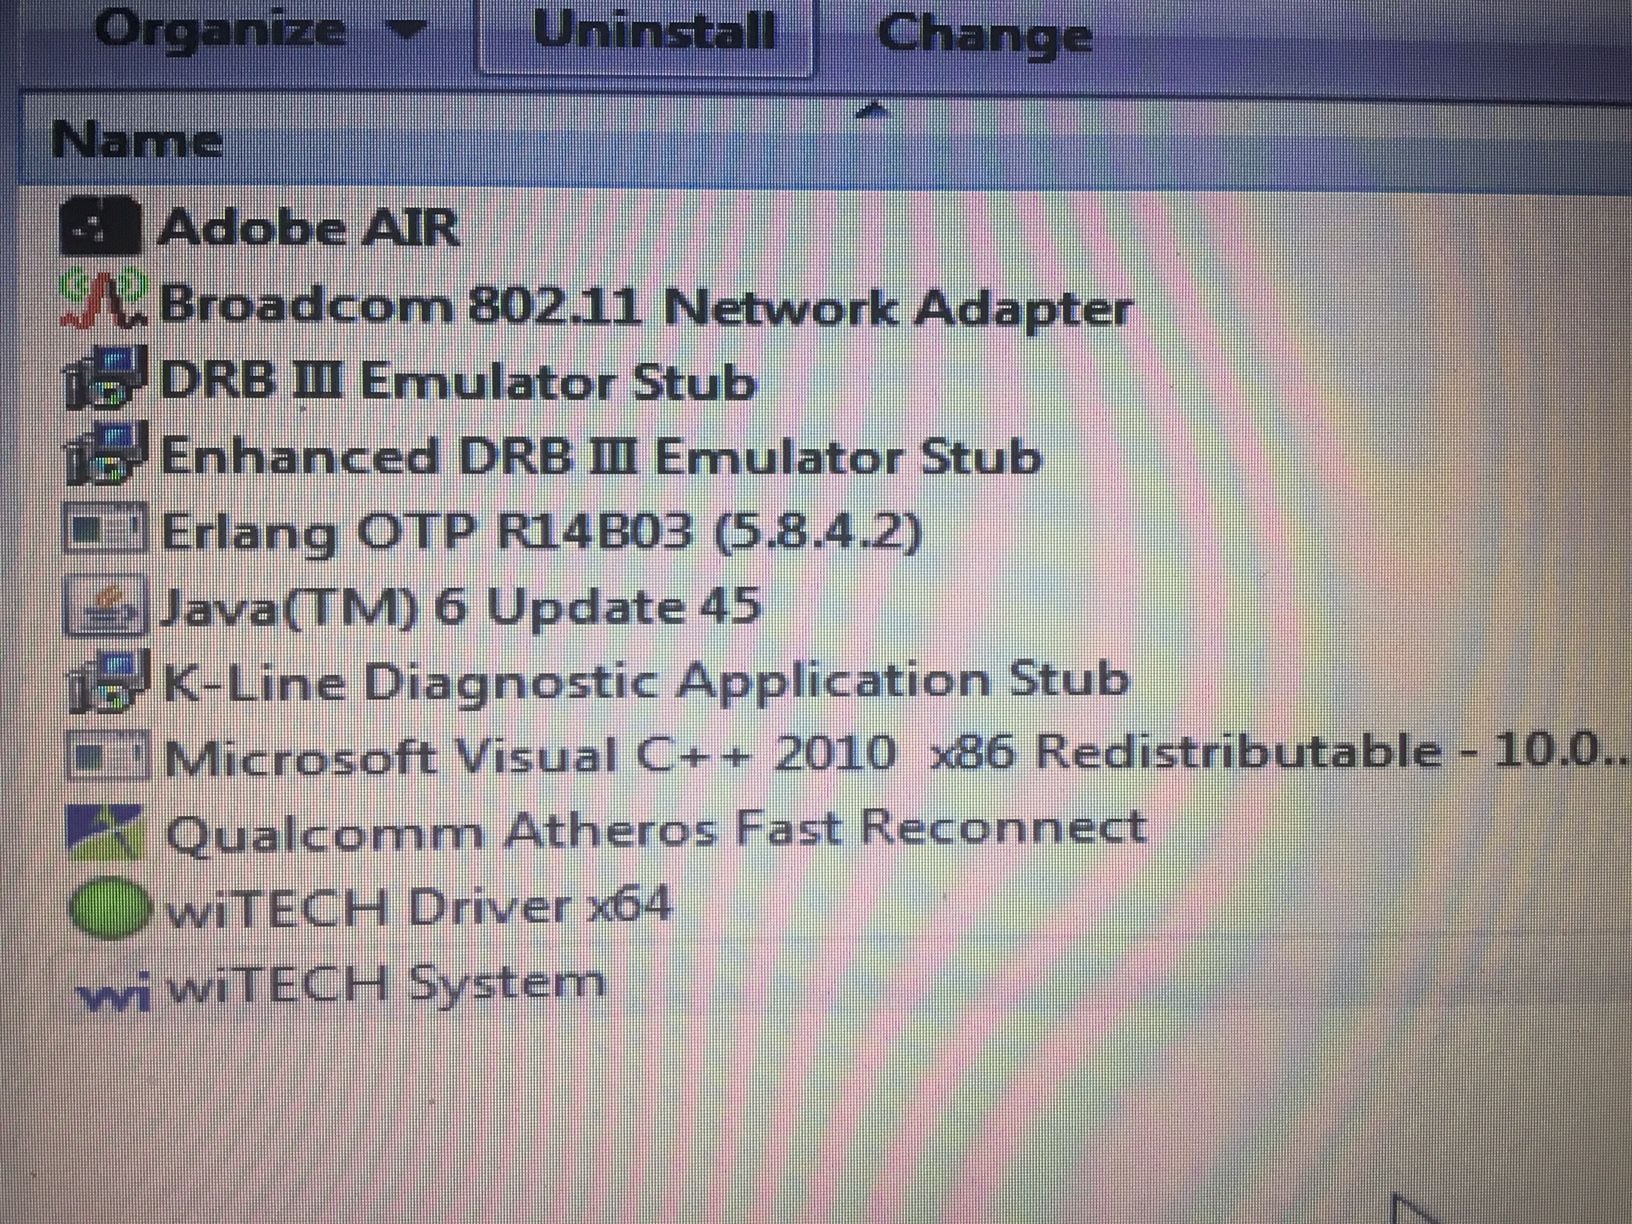 drb3 emulator software download